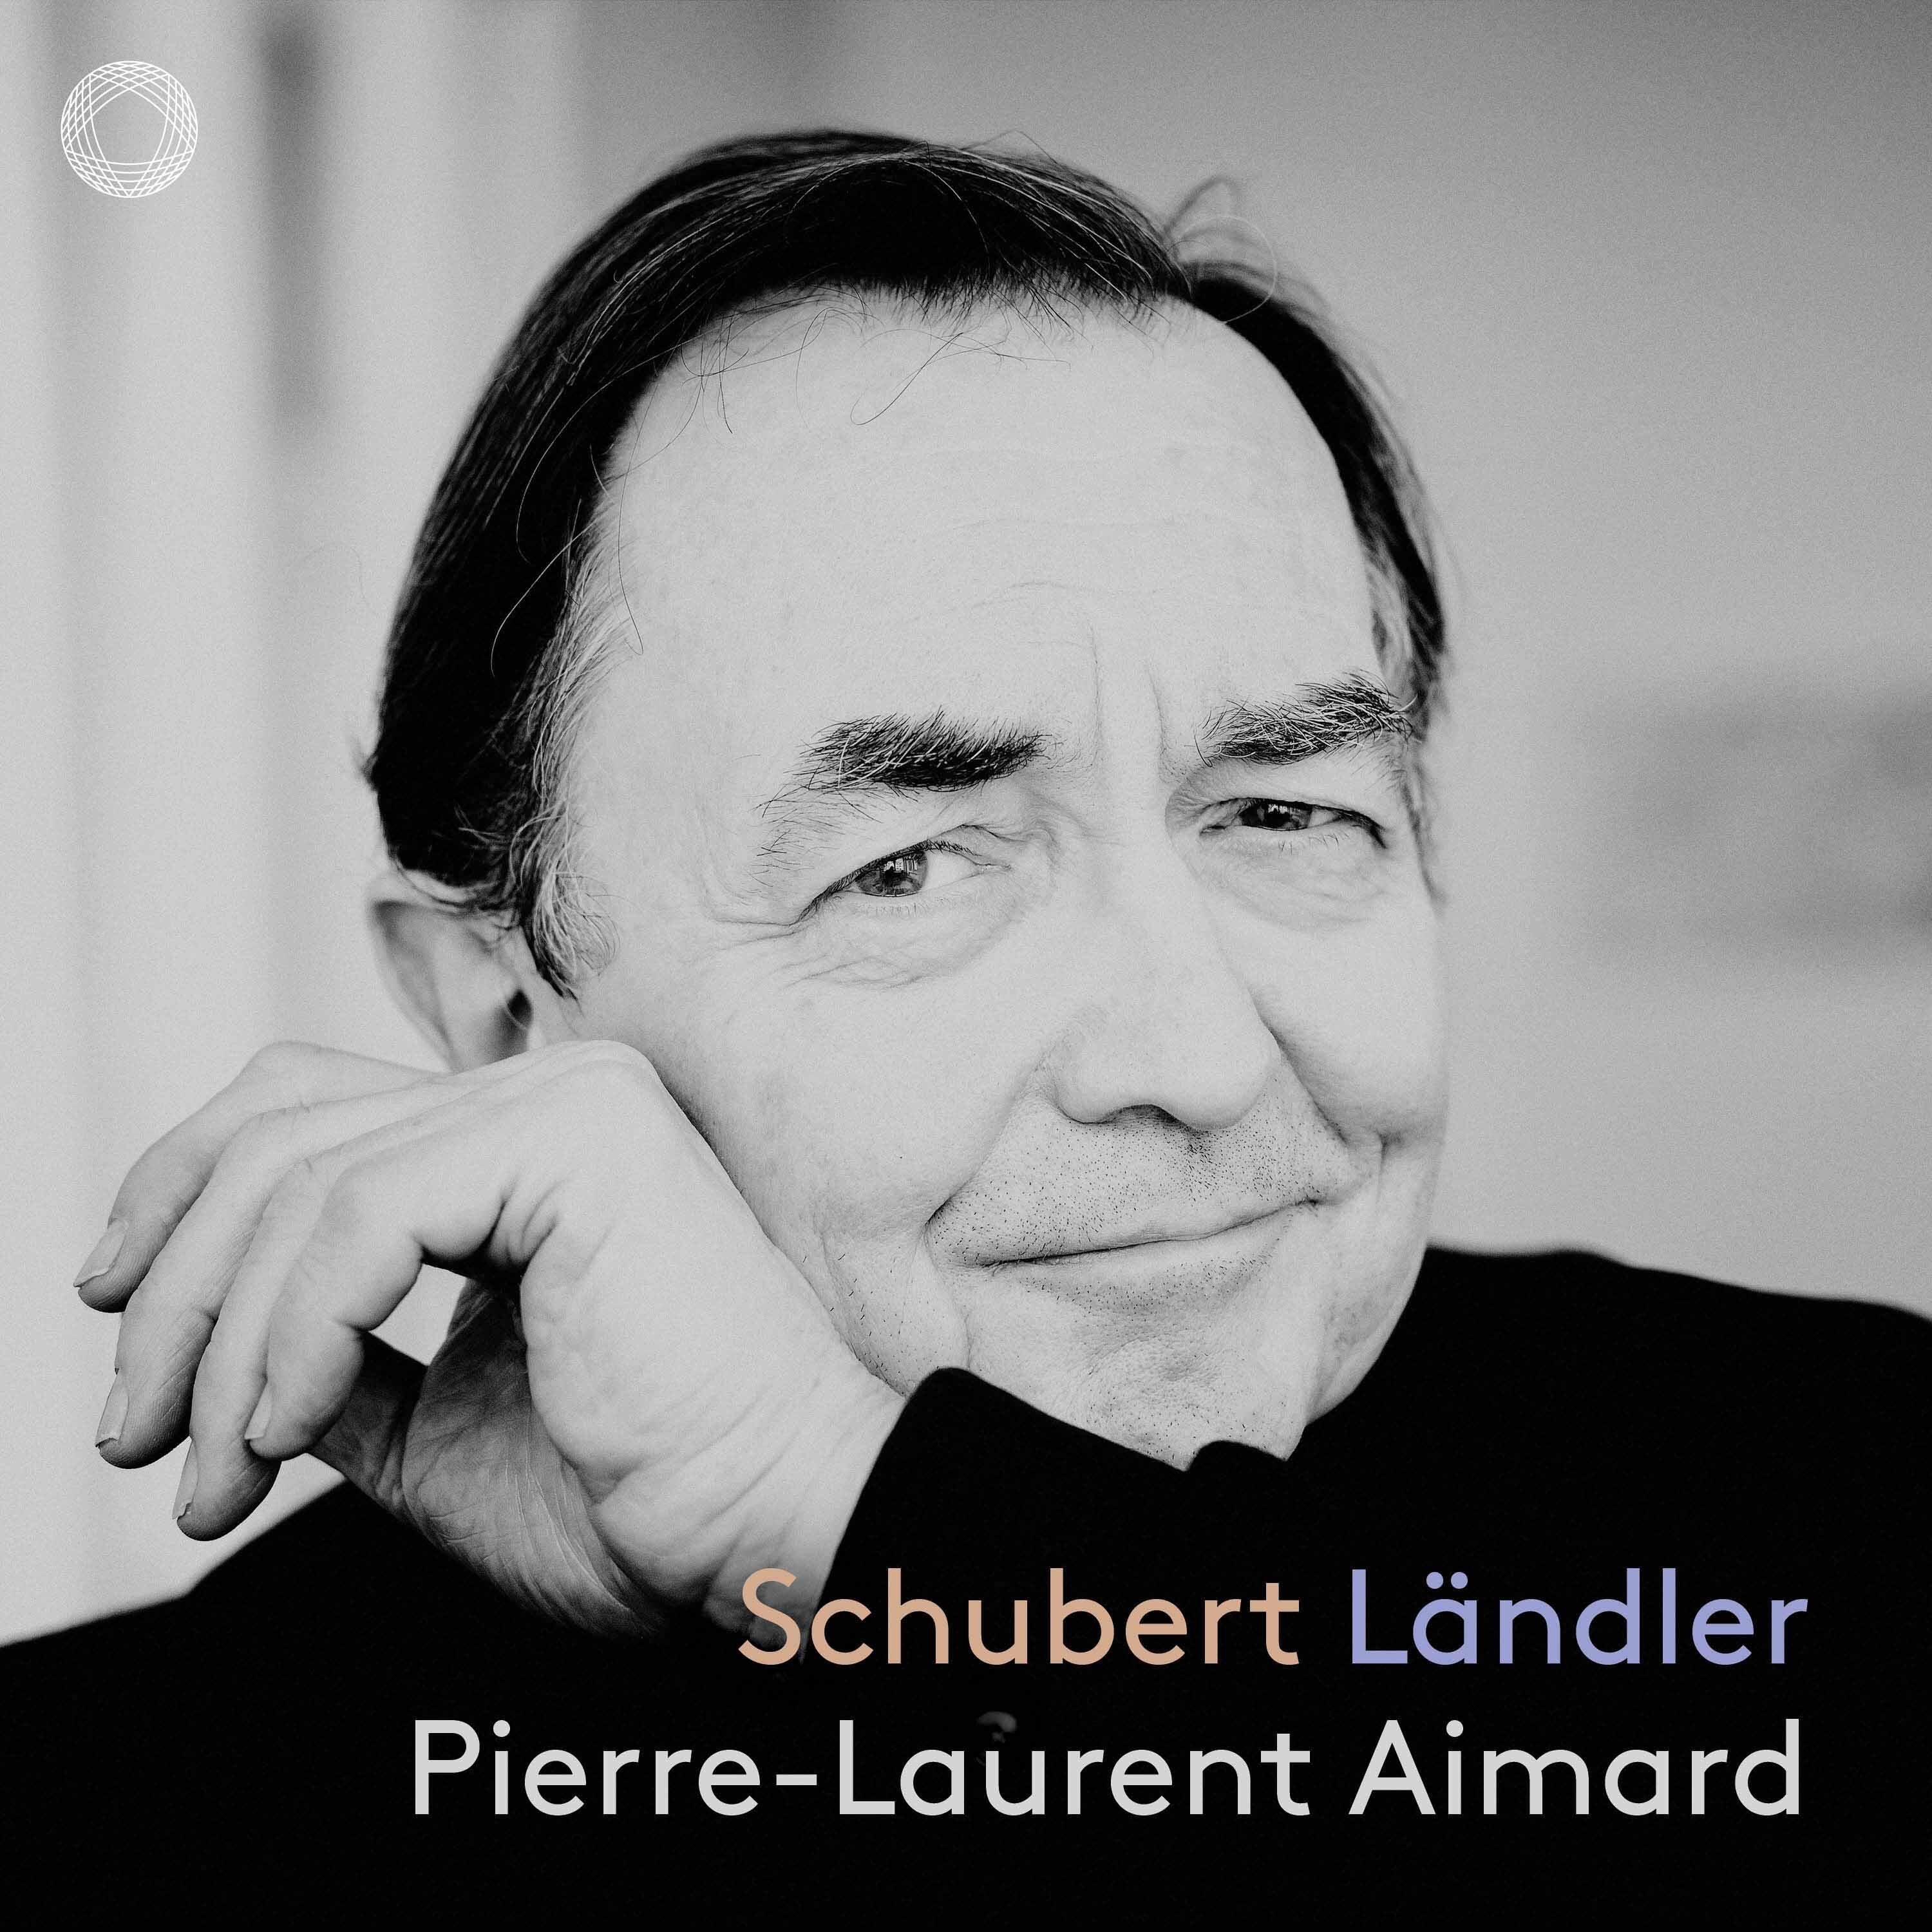 Pierre-Laurent Aimard - 38 Waltzes, Ländler and Ecossaises, Op. 18, D.145, Ländler: No. 13 in A Major - No. 14 in D Major - No. 15 in G Major